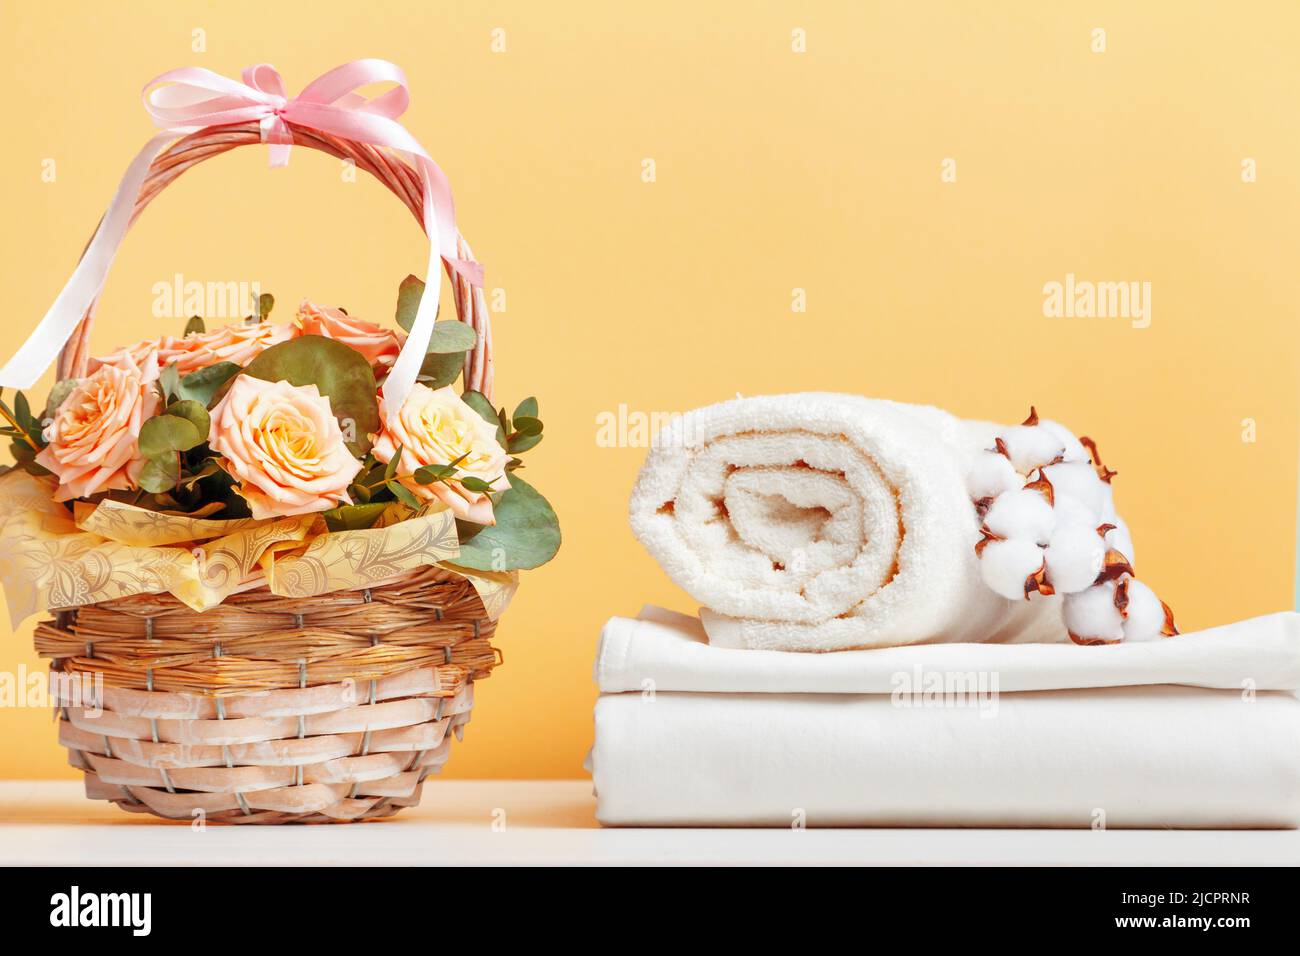 Weiße Bettwäsche, Bettwäsche und eine Rolle Handtücher. Korb mit Blumen auf dem Tisch. Stockfoto